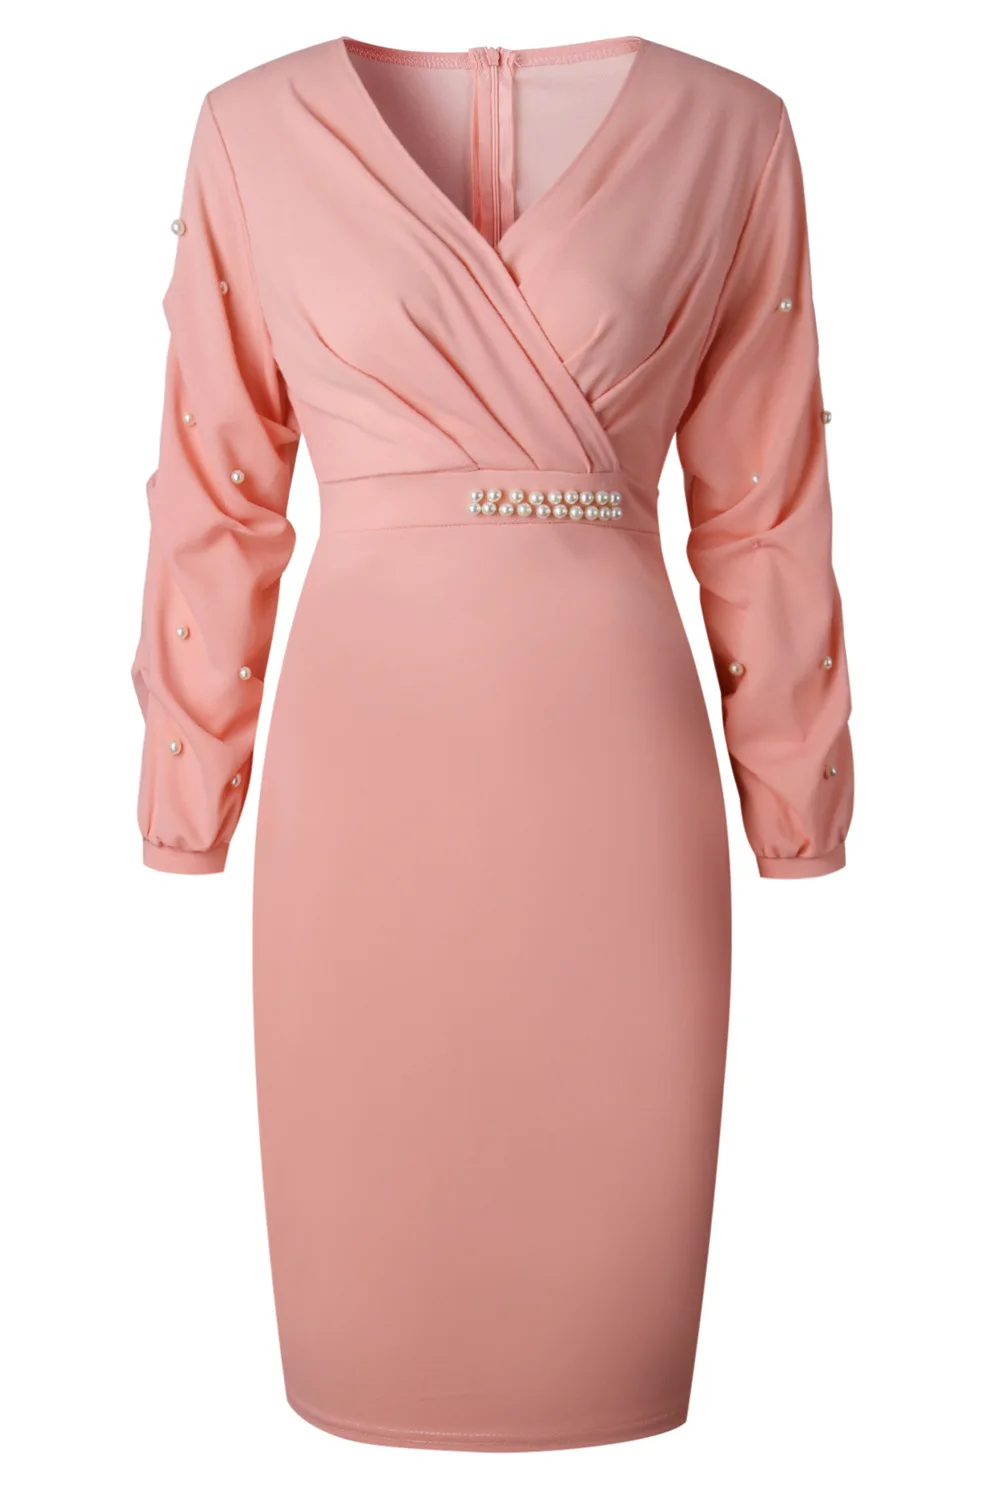 Aovica модное однотонное розовое офисное платье с бусинами, женское сексуальное платье с v-образным вырезом и рукавом 3/4, вечерние Женское обтягивающее платье, платье Vestidos